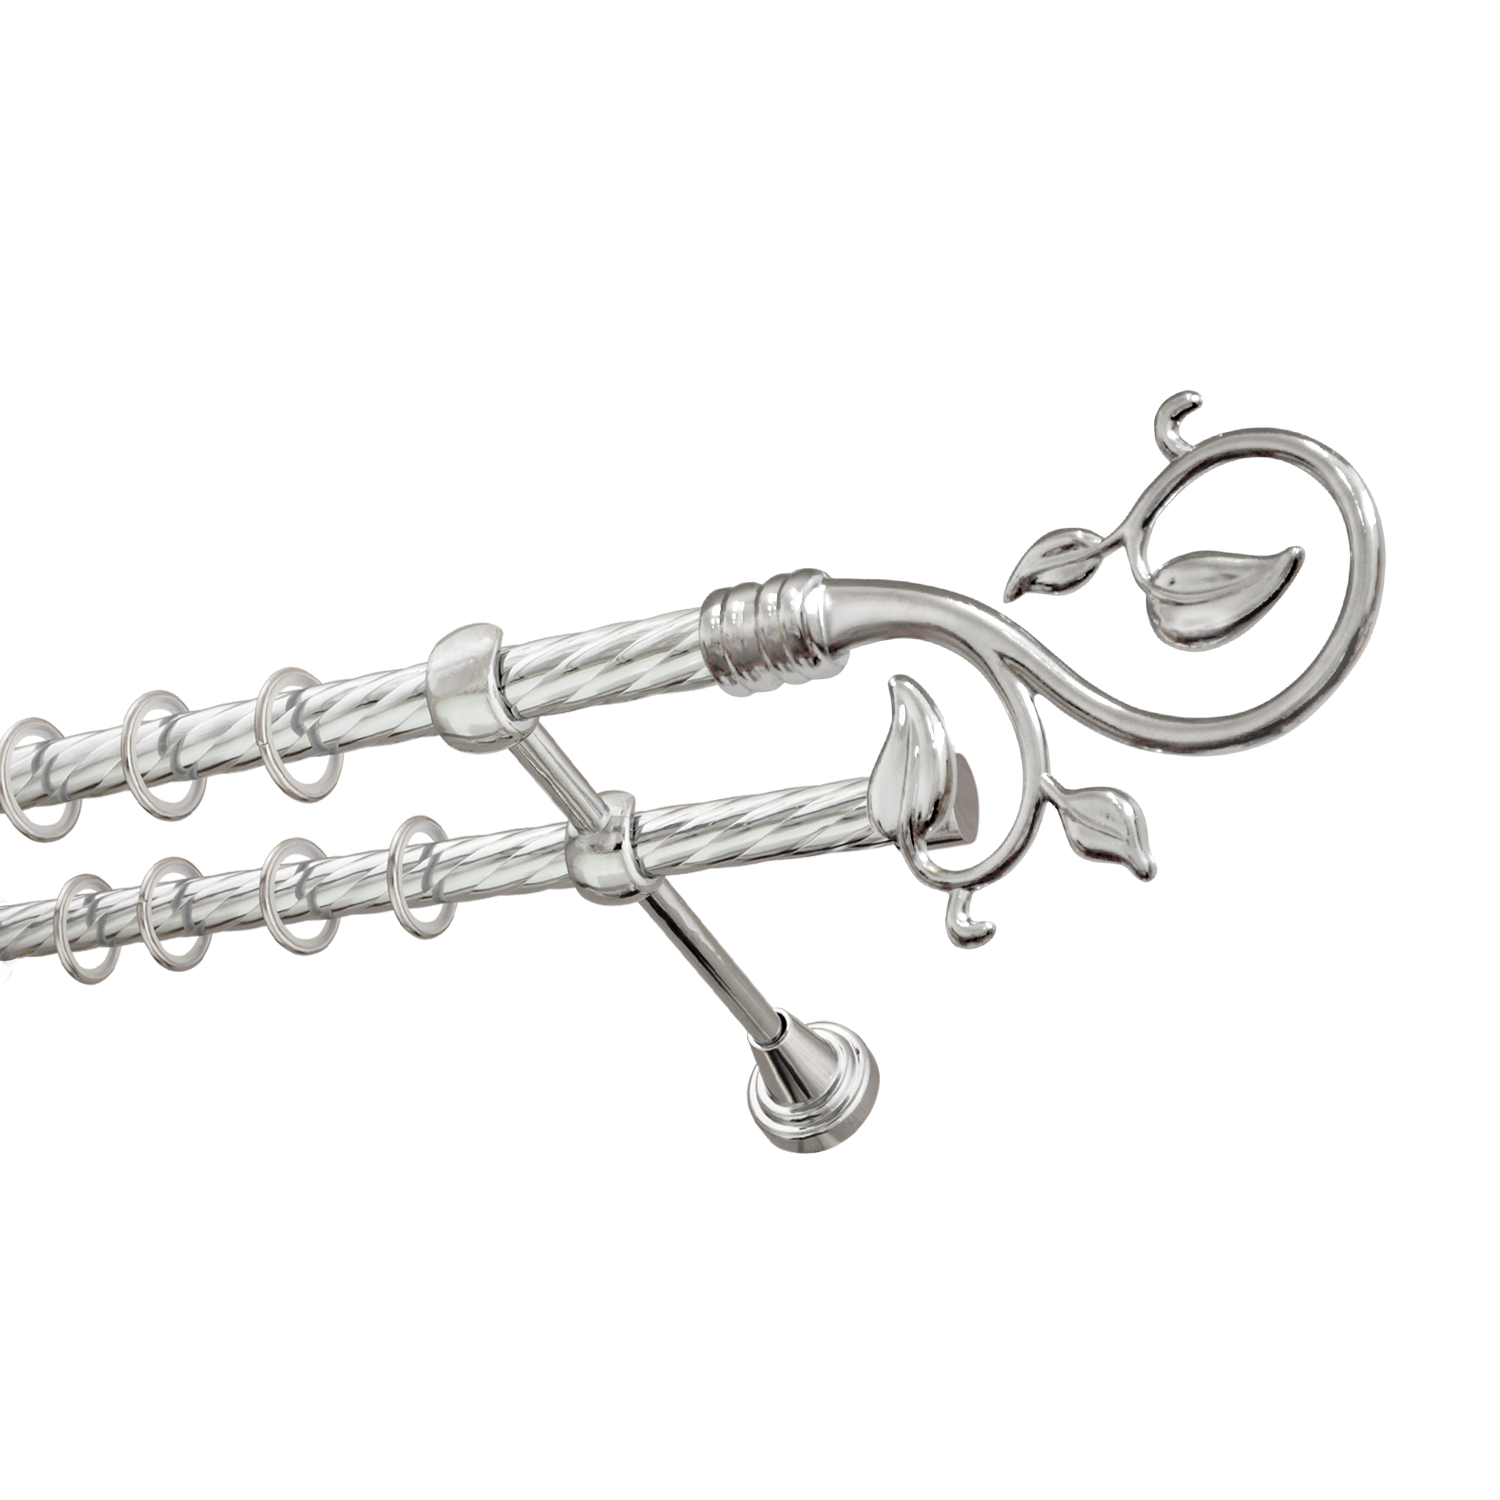 Металлический карниз для штор Амели, двухрядный 16/16 мм, серебро, витая штанга, длина 180 см - фото Wikidecor.ru